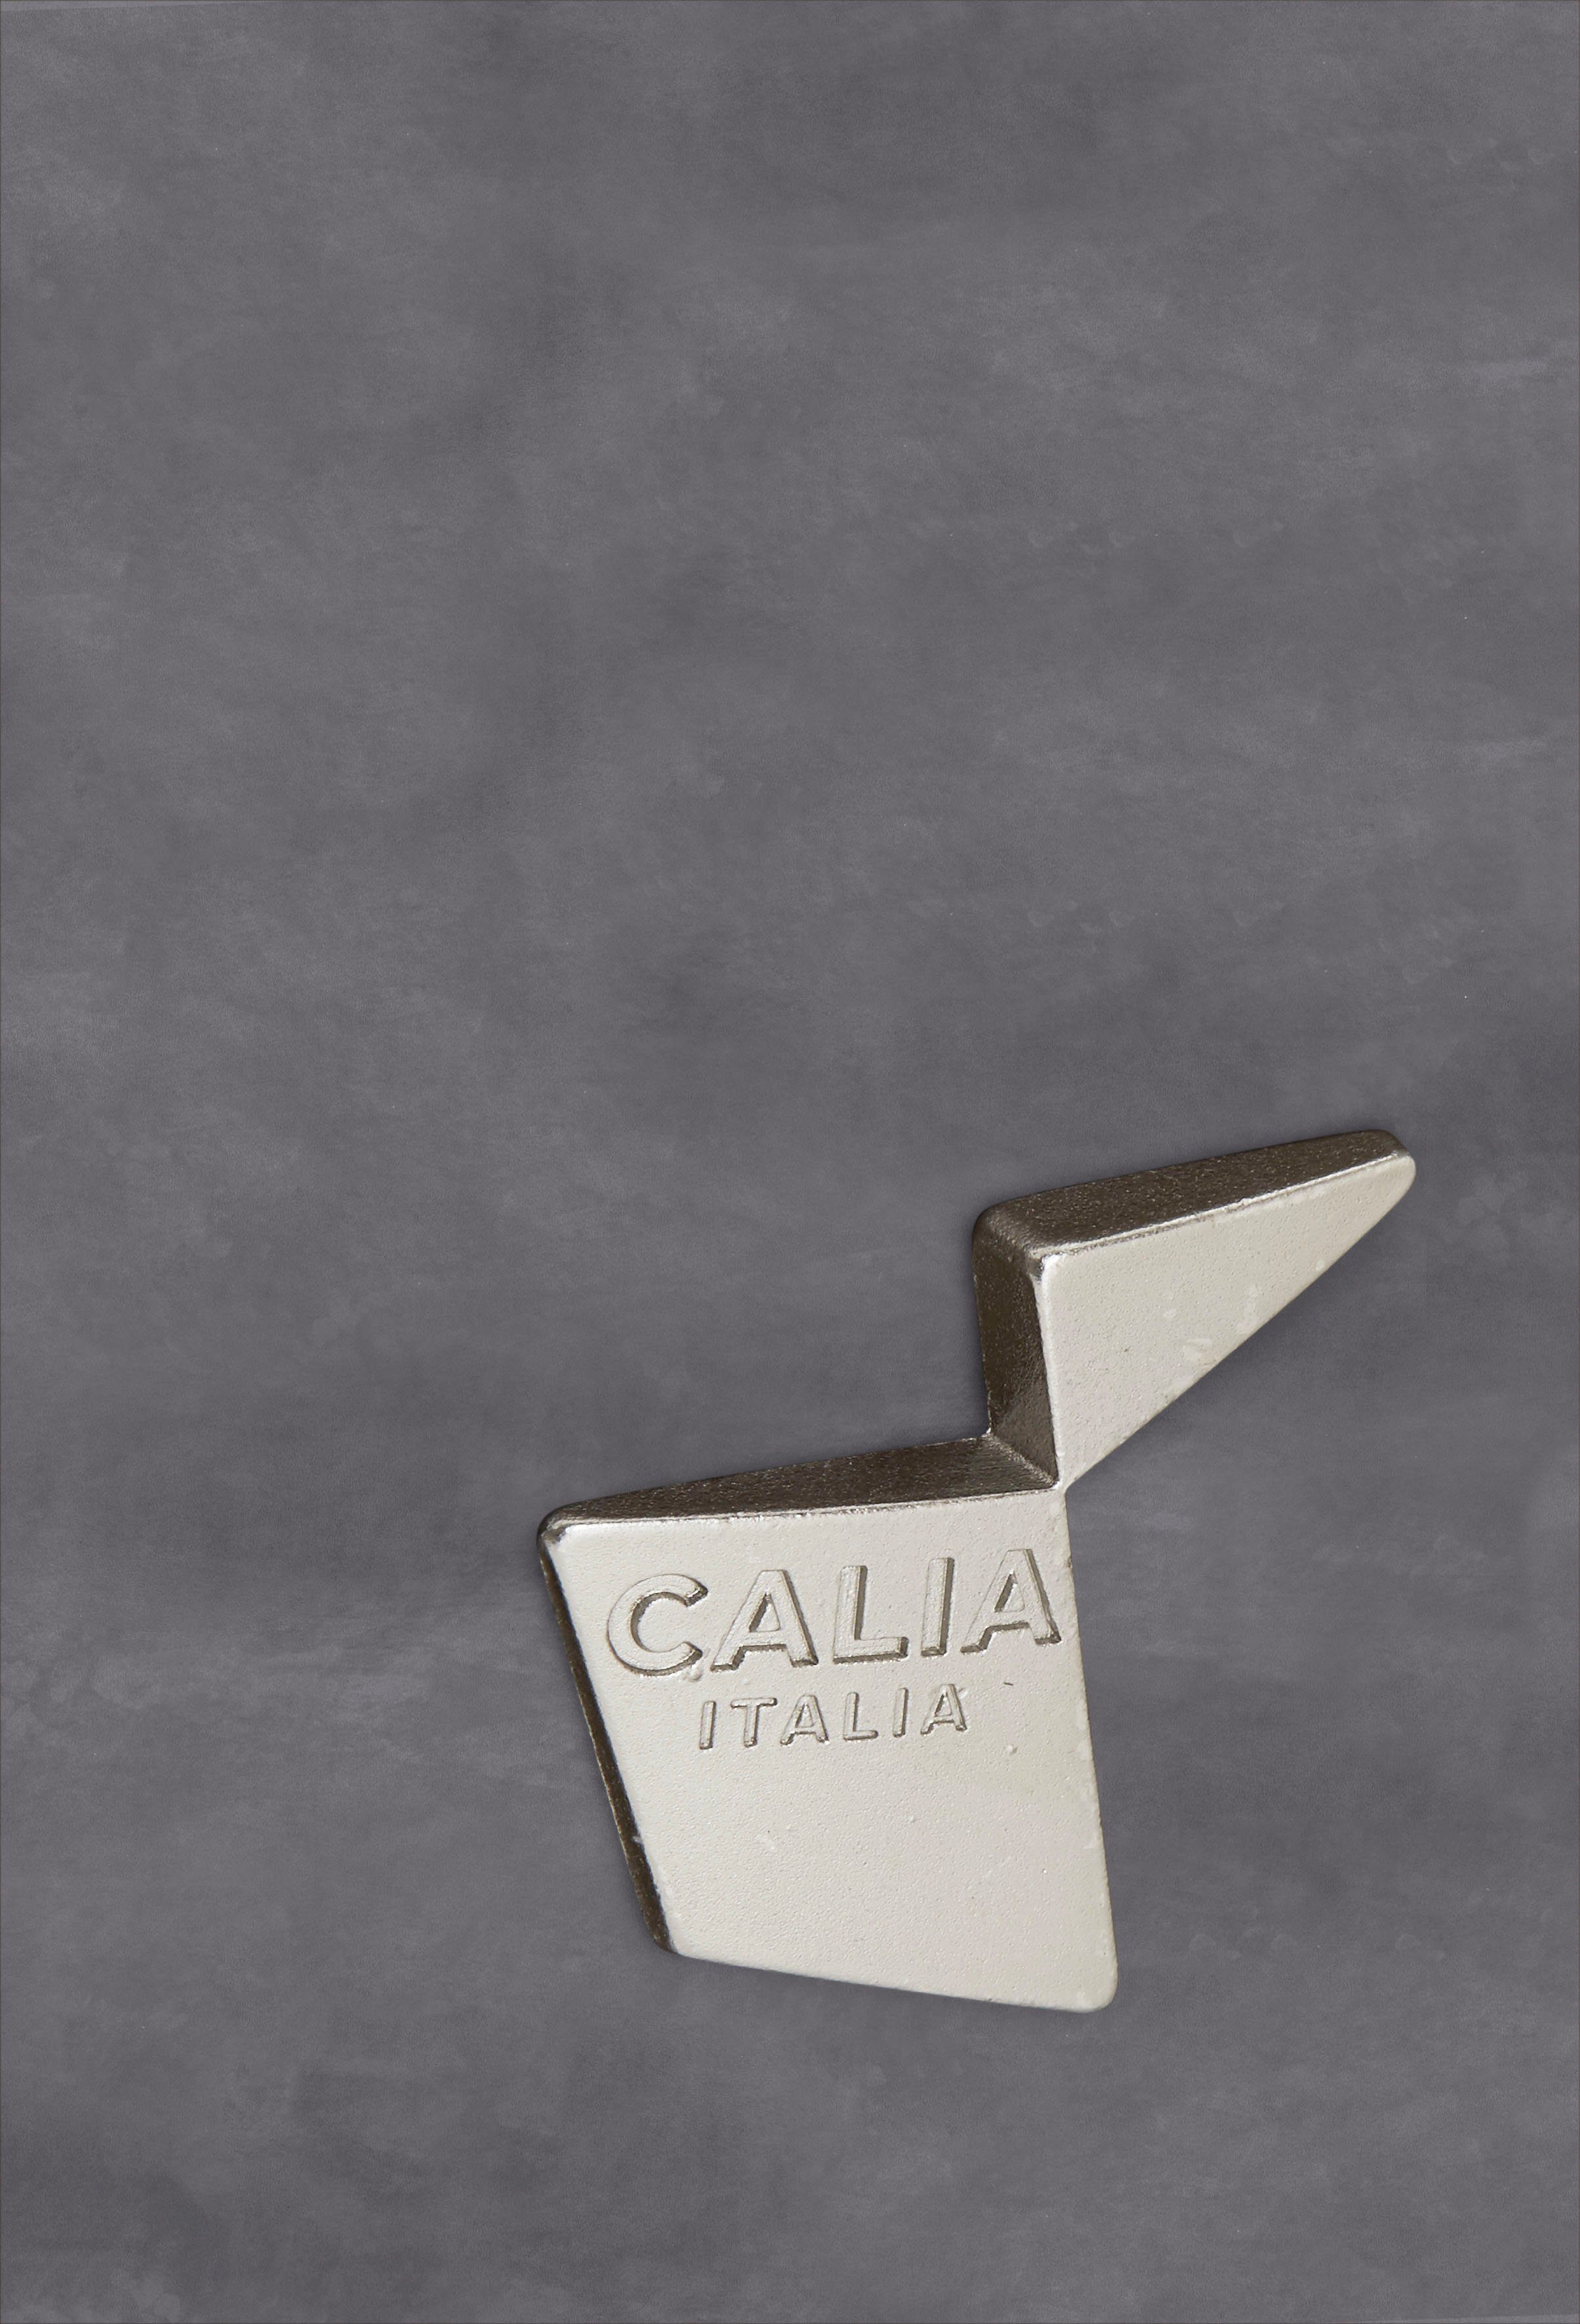 ITALIA Ginevra Gaia, CALIA Care ash Luxus-Microfaser Hydro Sessel mit